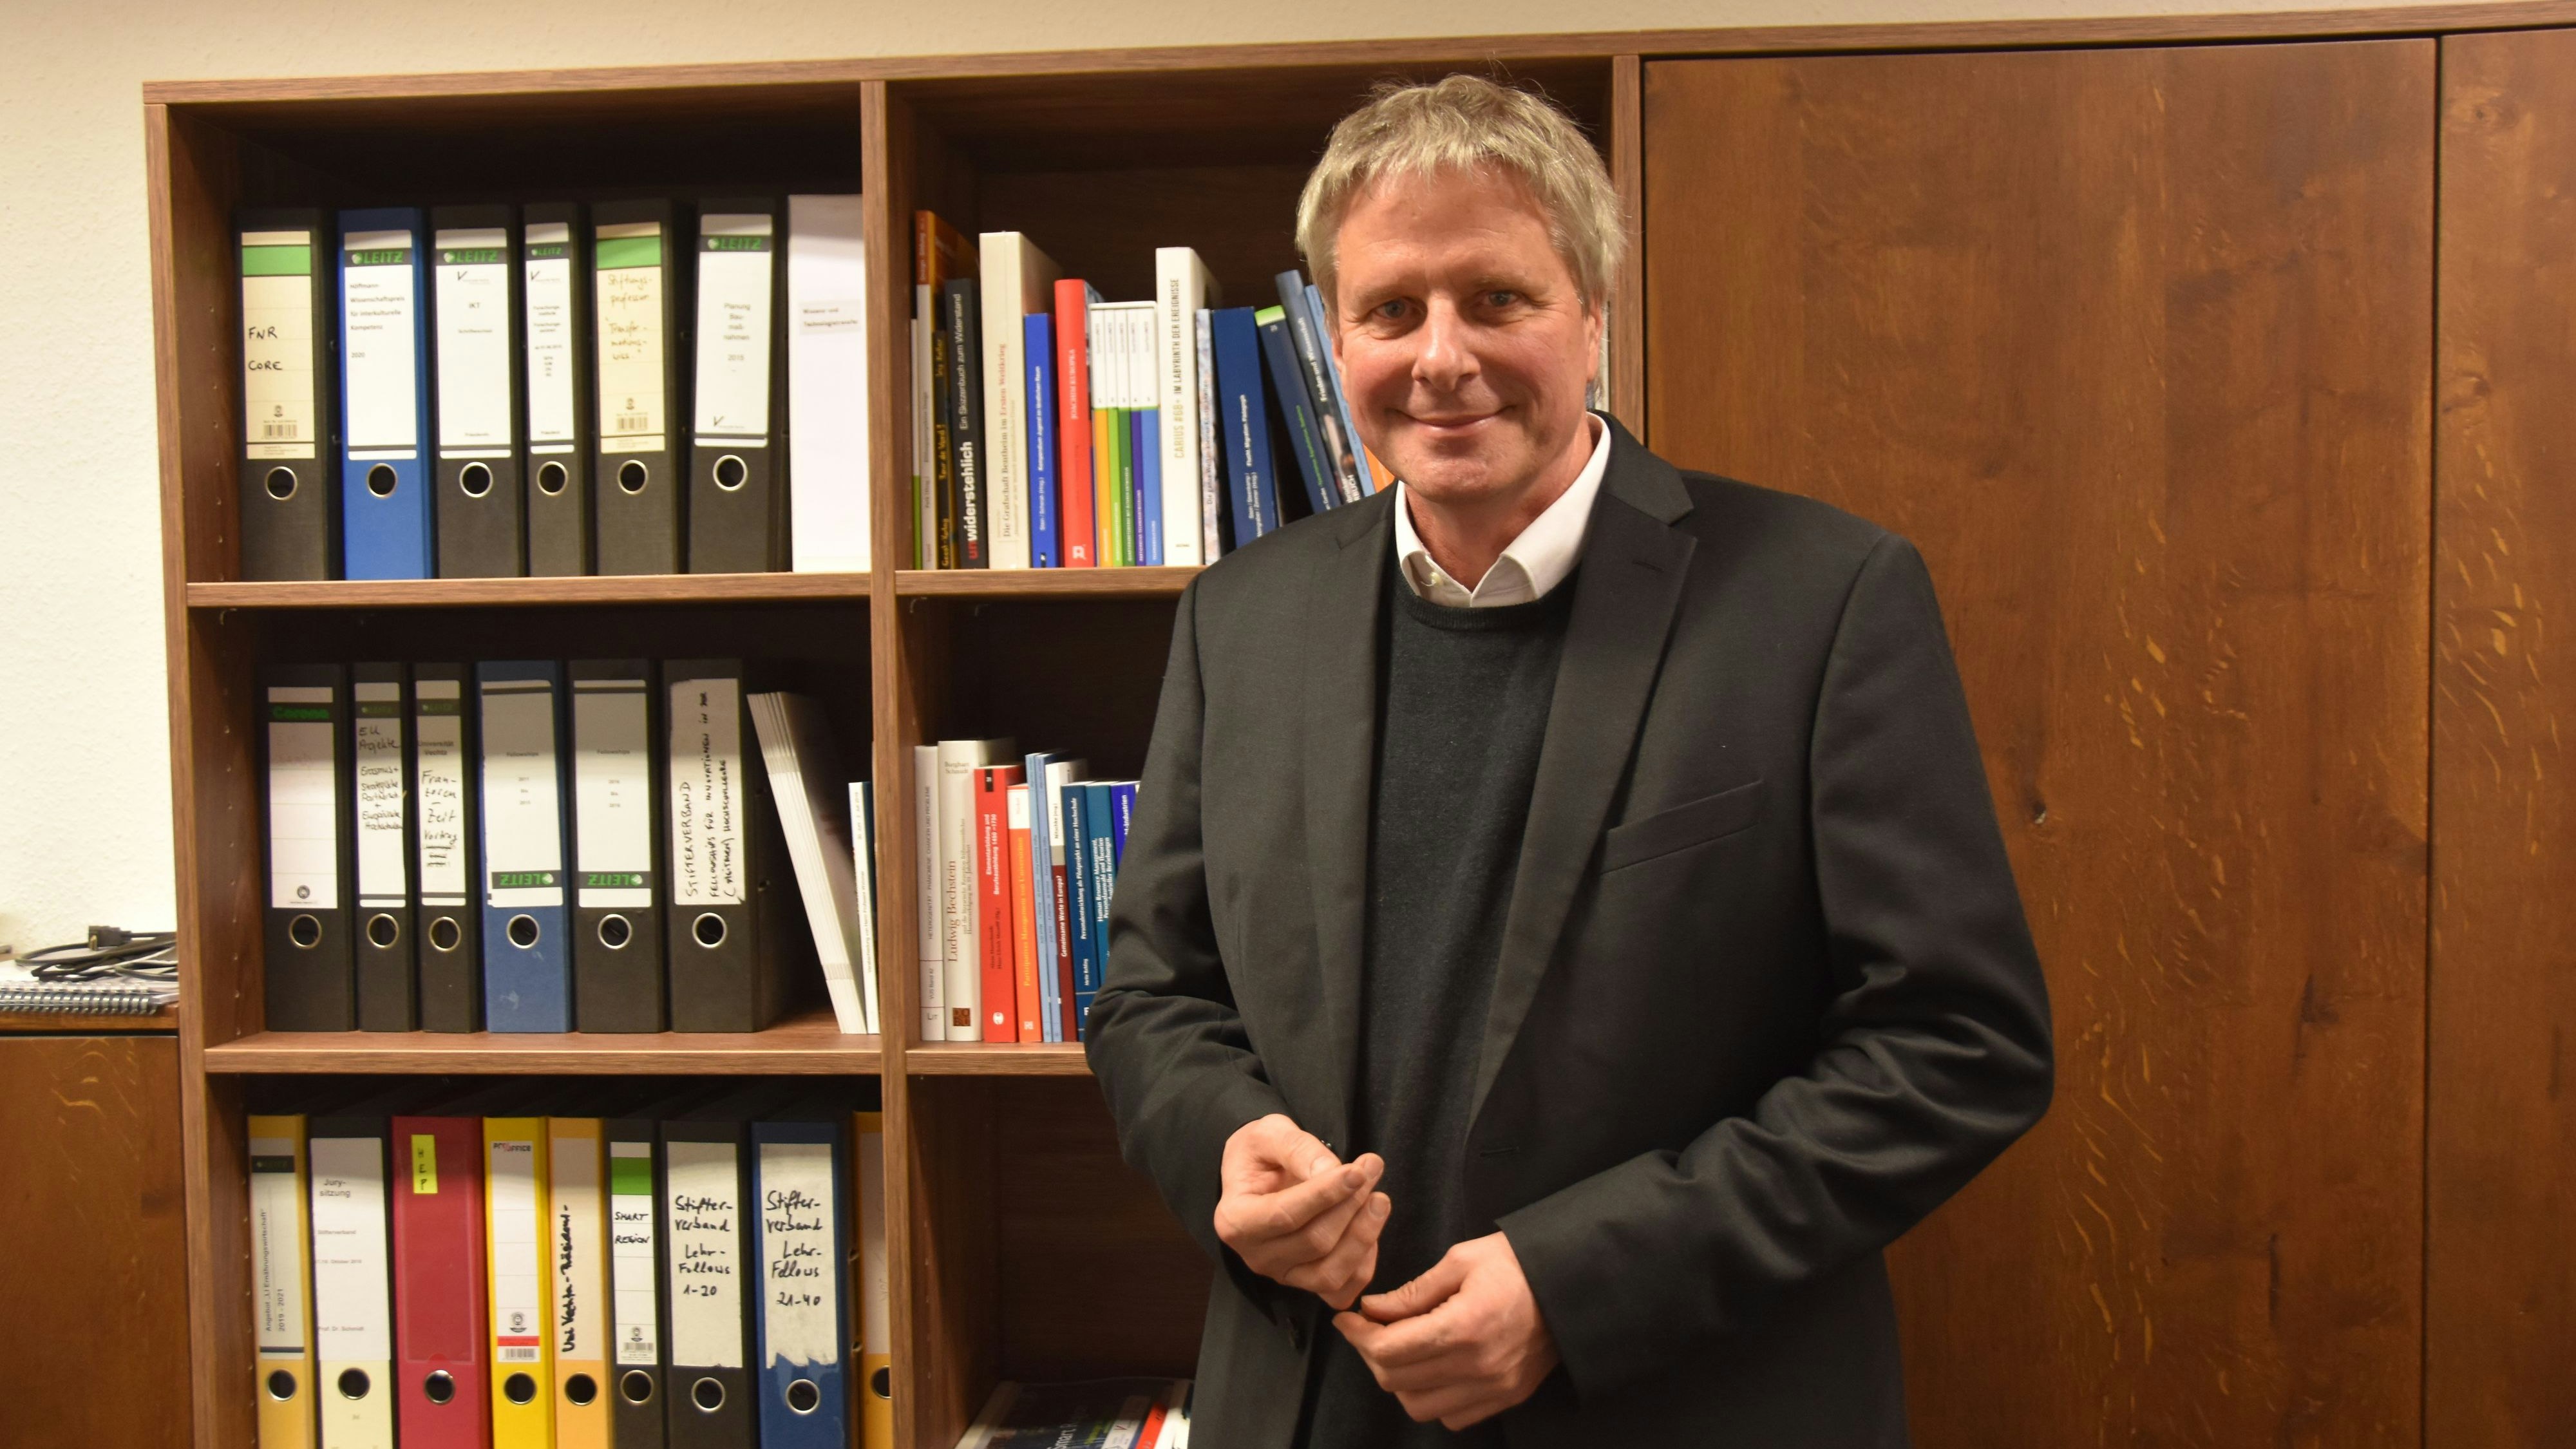 Rückblick mit Dankbarkeit: Der scheidende Präsident der Universität Vechta, Professor Dr. Burghart Schmidt. Foto: Tzimurtas